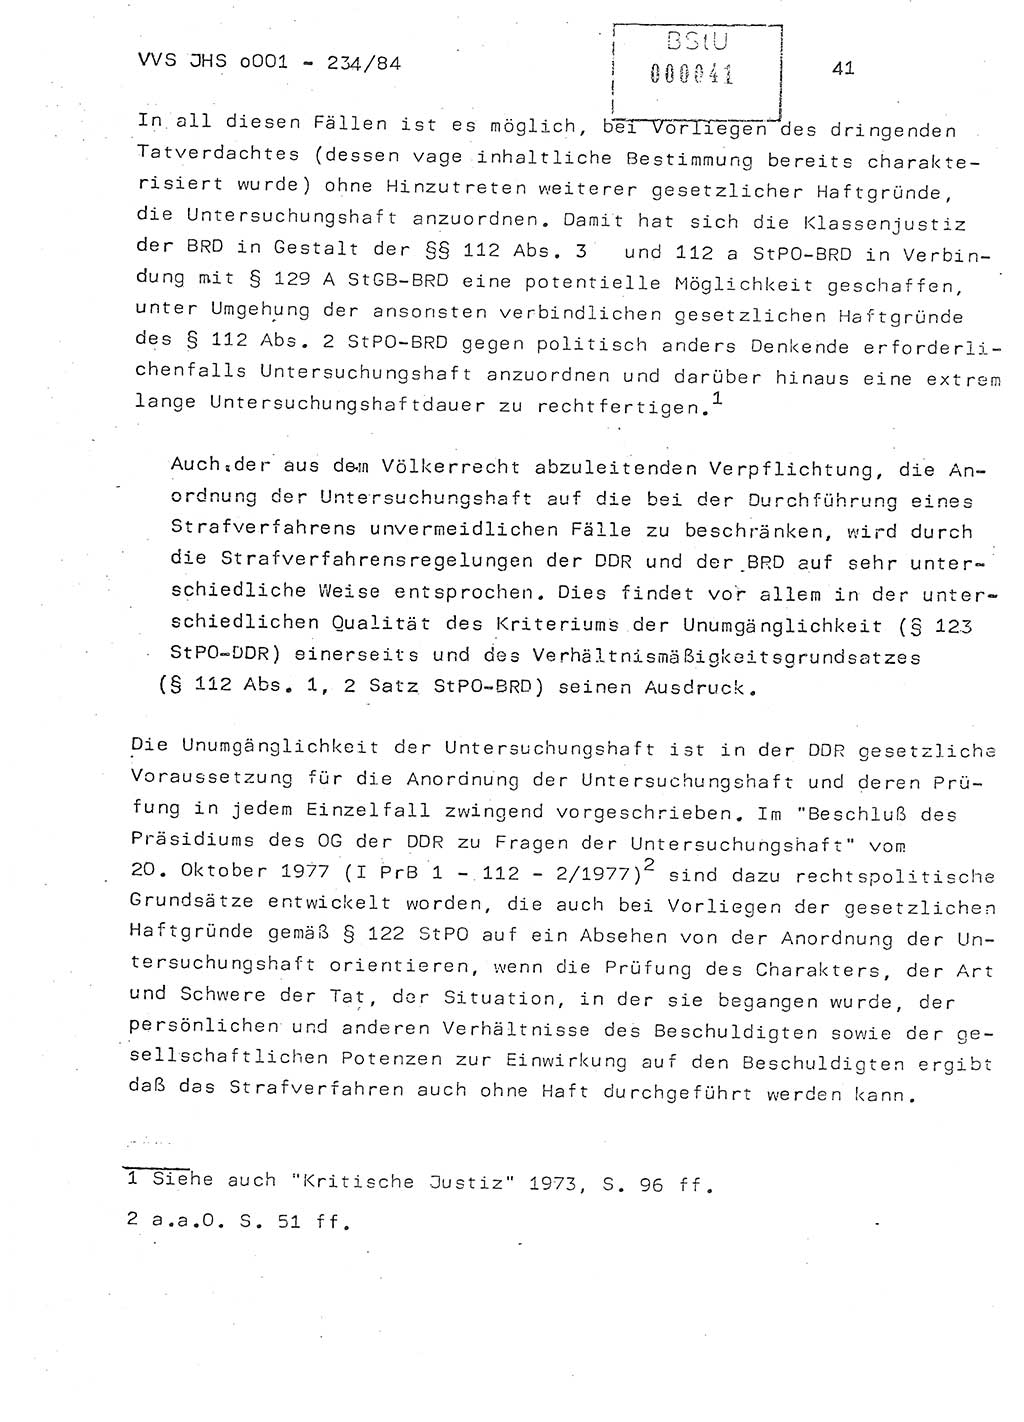 Dissertation Oberst Siegfried Rataizick (Abt. ⅩⅣ), Oberstleutnant Volkmar Heinz (Abt. ⅩⅣ), Oberstleutnant Werner Stein (HA Ⅸ), Hauptmann Heinz Conrad (JHS), Ministerium für Staatssicherheit (MfS) [Deutsche Demokratische Republik (DDR)], Juristische Hochschule (JHS), Vertrauliche Verschlußsache (VVS) o001-234/84, Potsdam 1984, Seite 41 (Diss. MfS DDR JHS VVS o001-234/84 1984, S. 41)